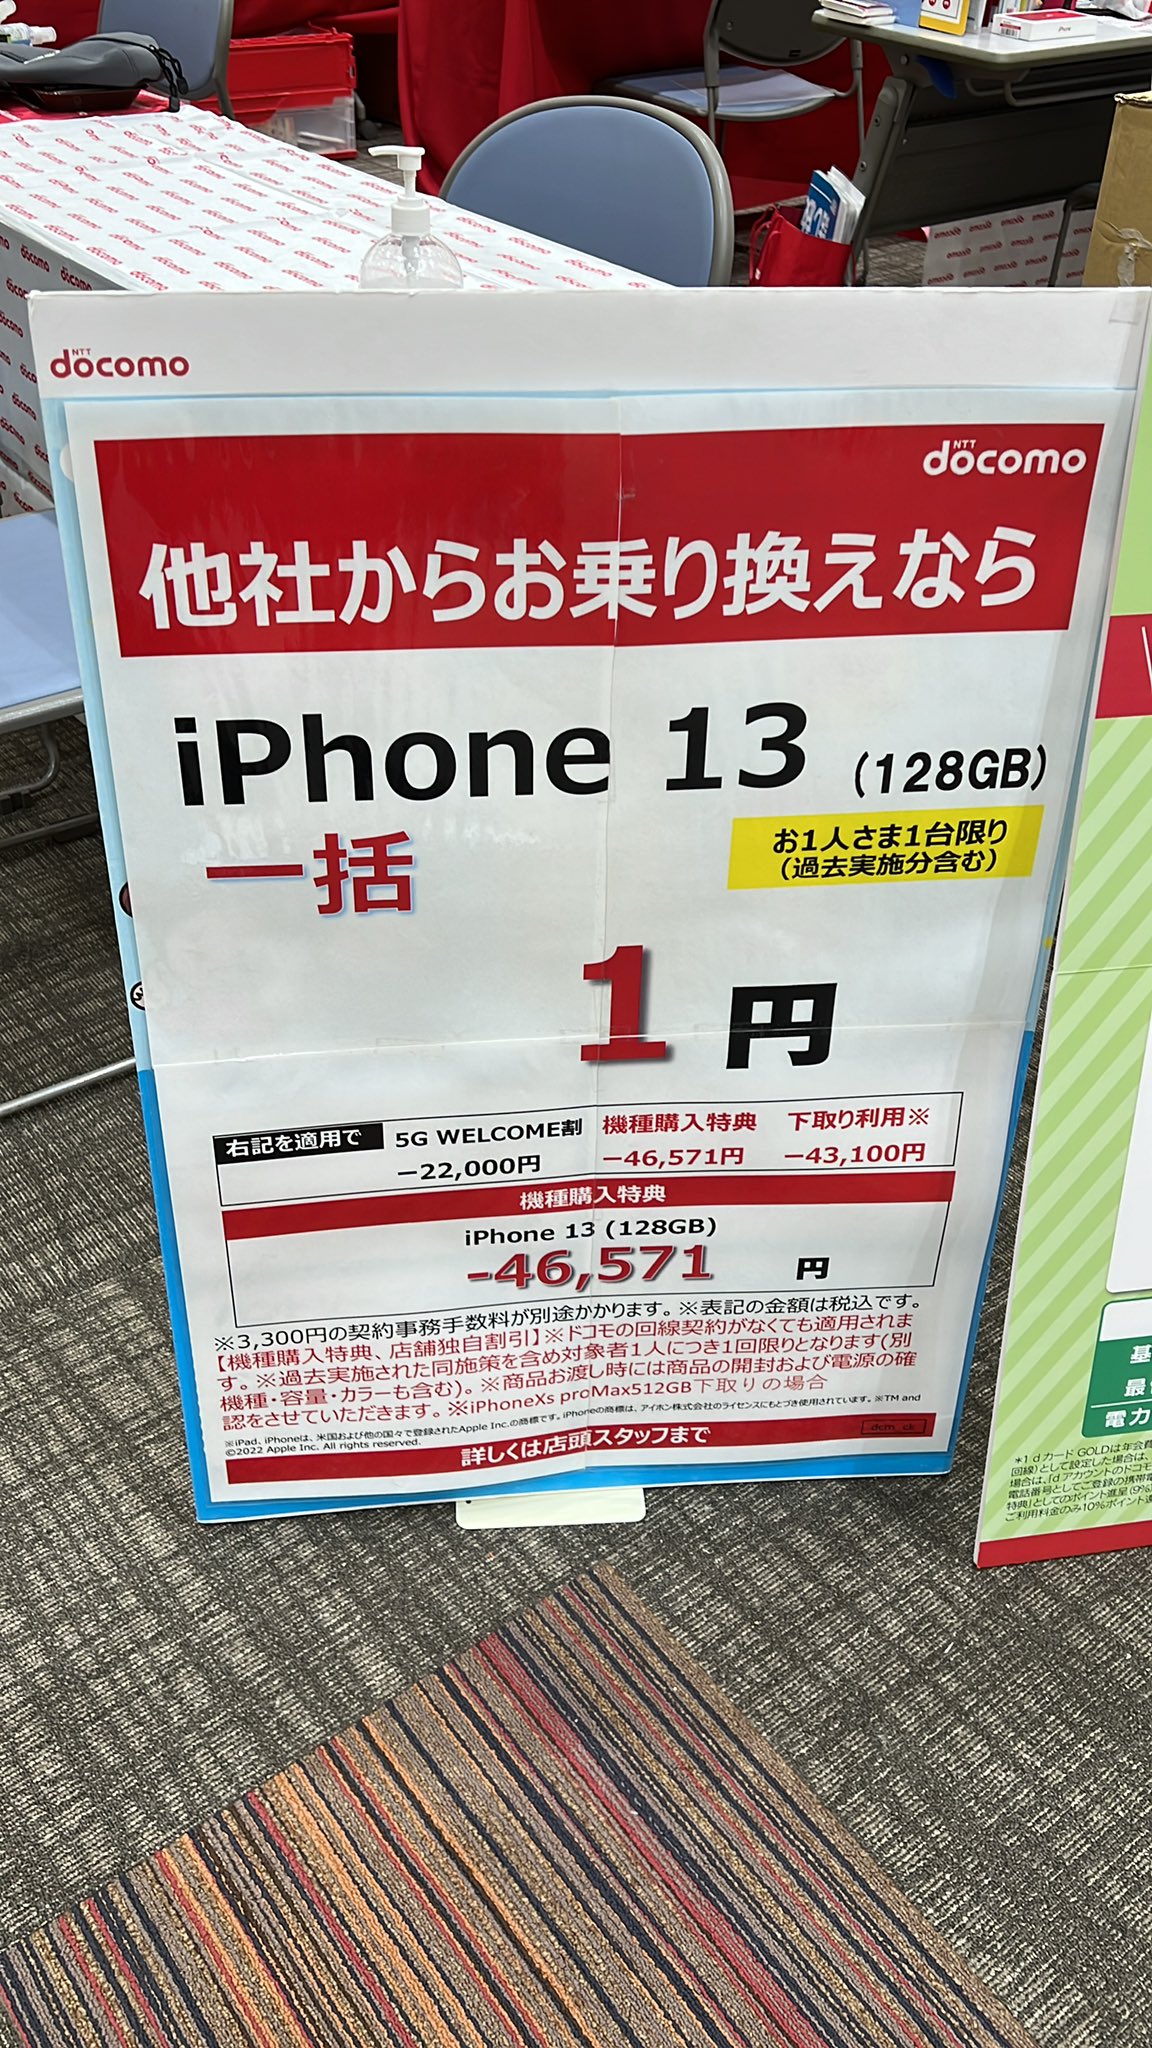 Iphone13 Iphone13pro グリーン 乗換 Mnp 一括1円 0円 7月8月以降もproはキャッシュバックあり 携帯情報 コム